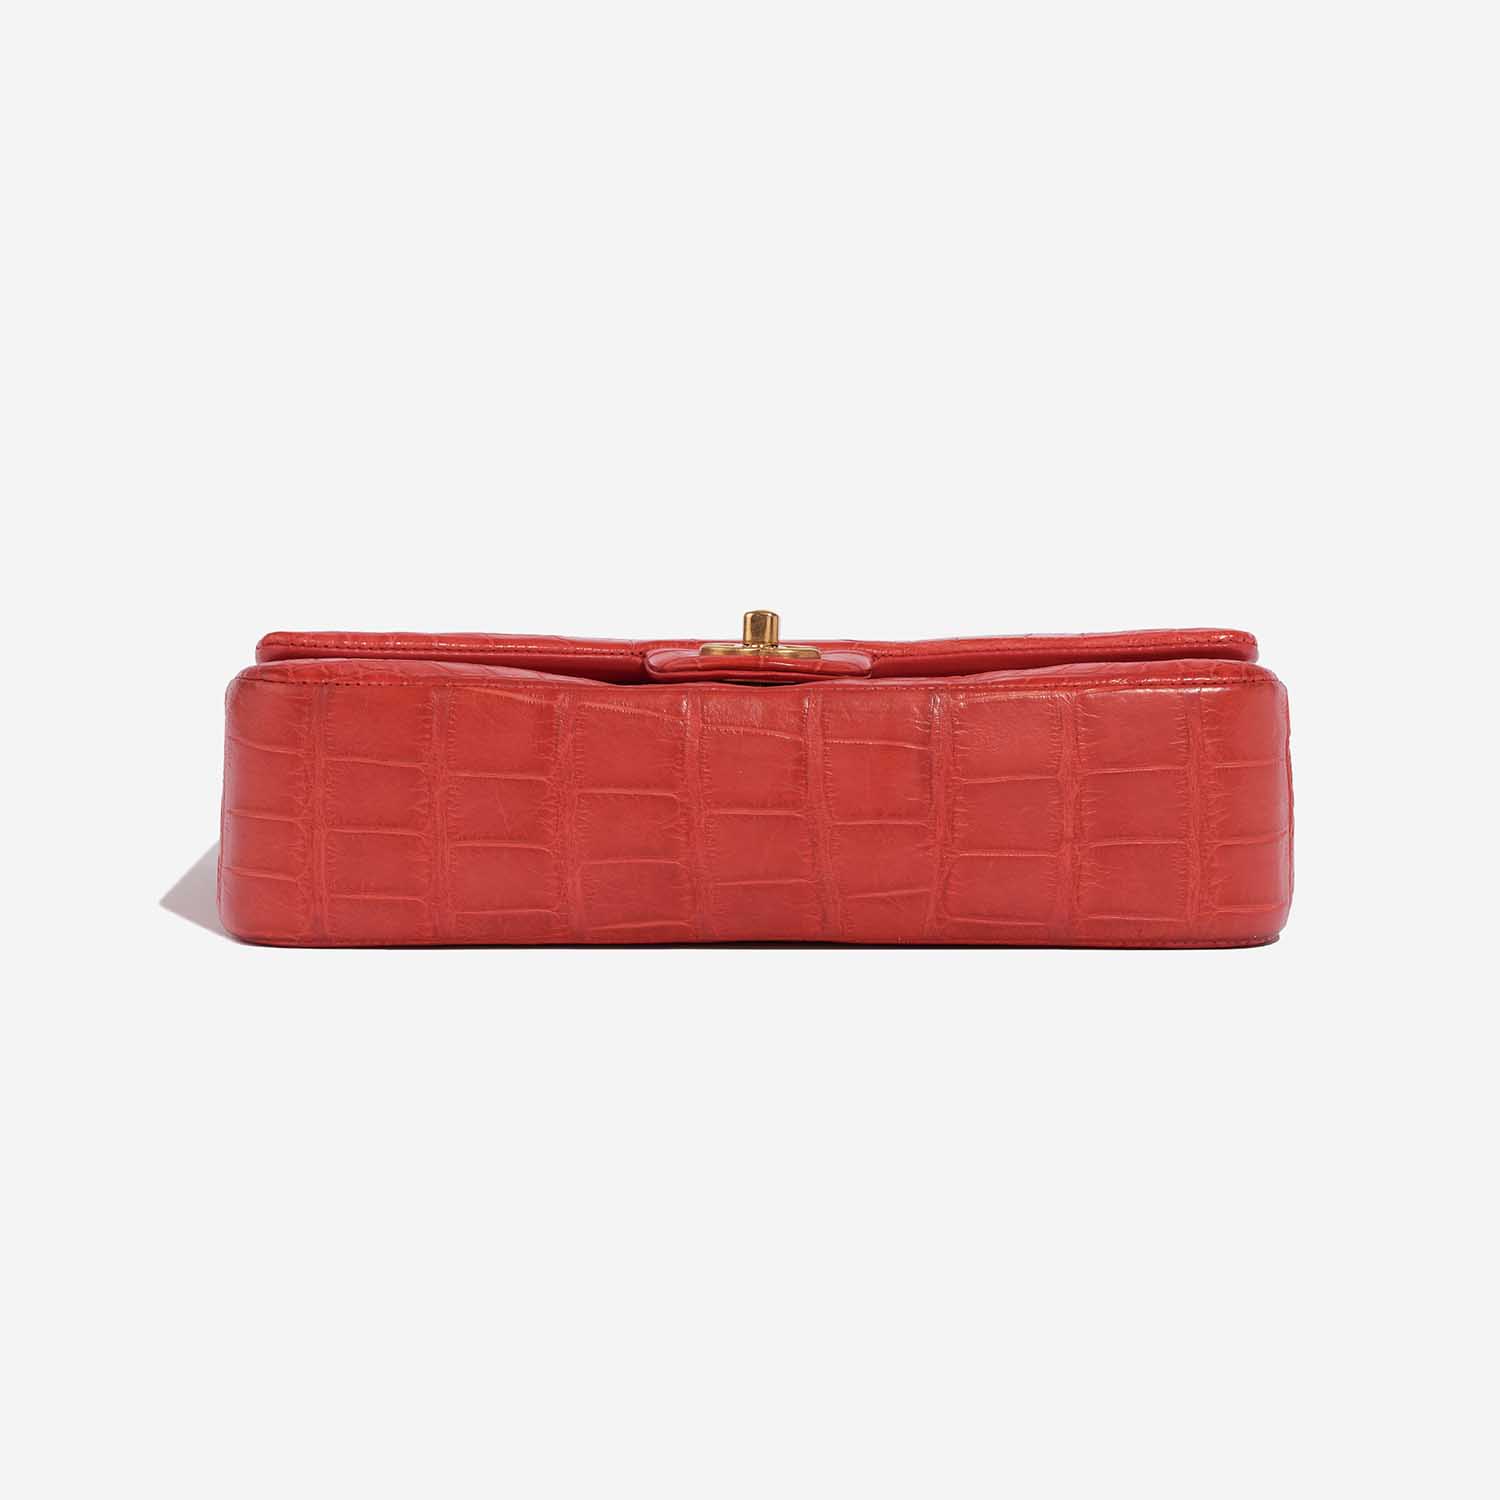 Chanel Timeless Medium Rot 8BTM S | Verkaufen Sie Ihre Designer-Tasche auf Saclab.com